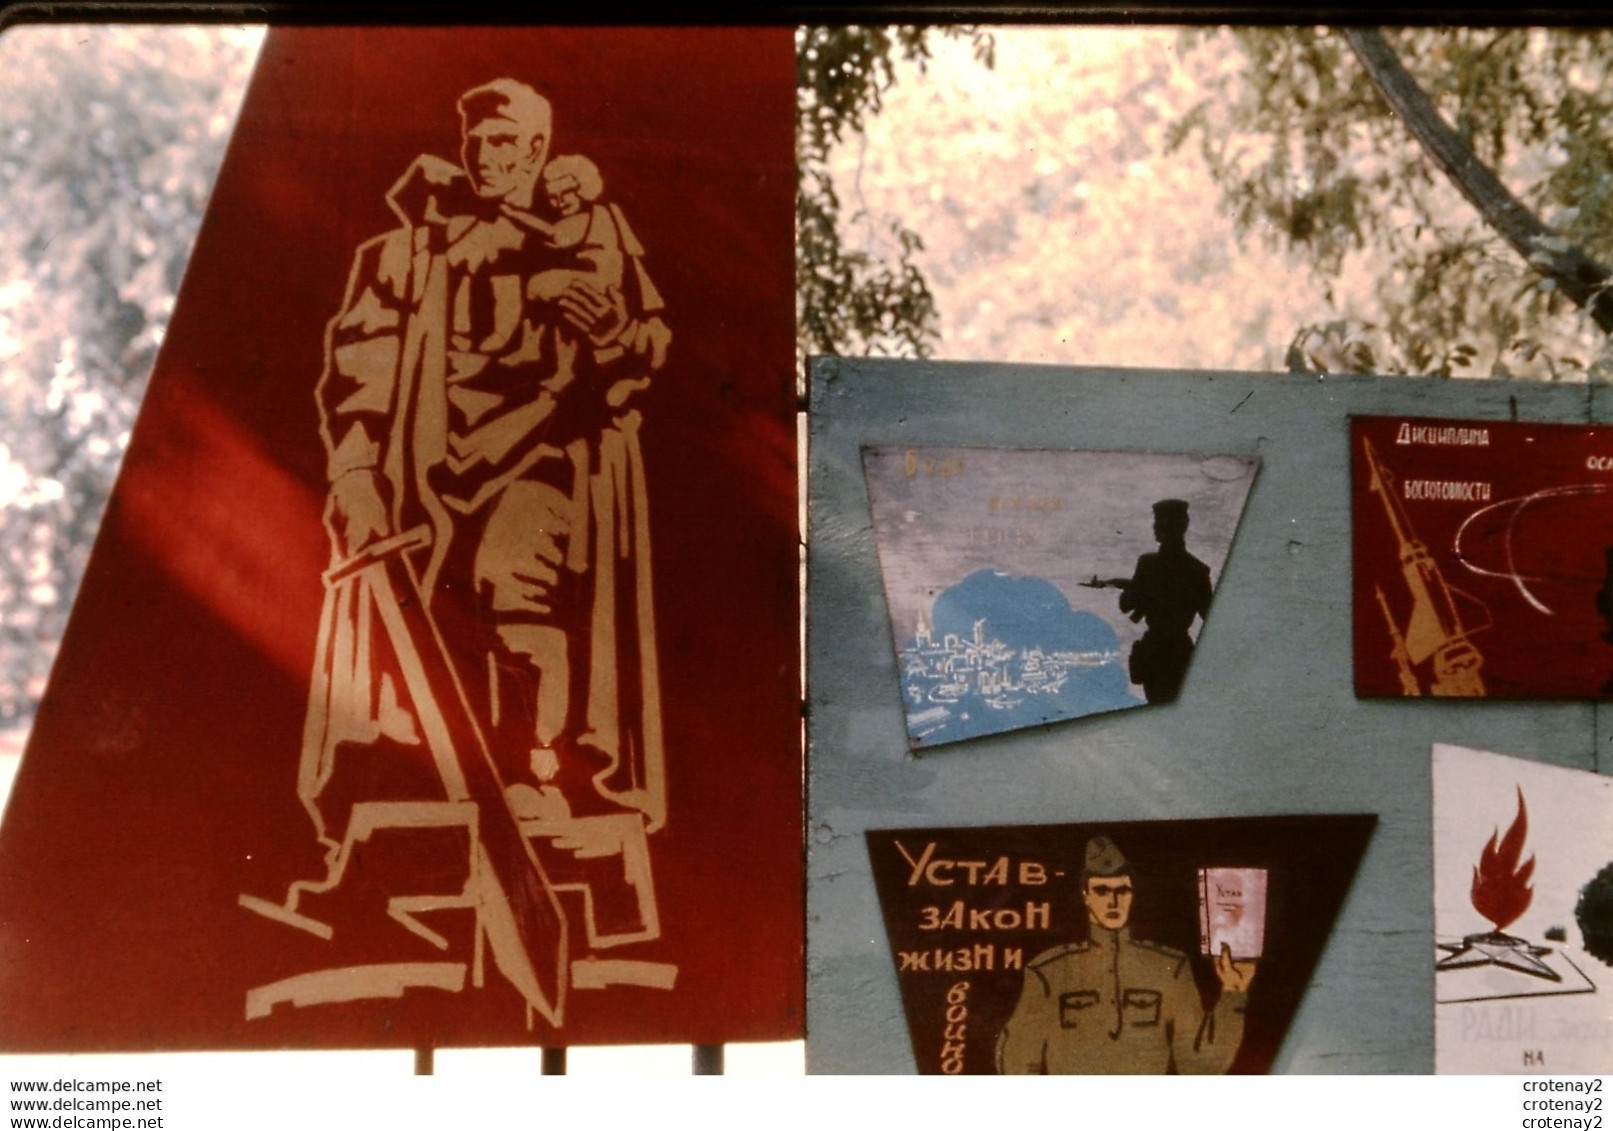 Photo Diapo Diapositive Slide URSS Depuis 1945 N°7 Une Armée Pour La Paix ? Académie FROUNZE MOSCOU En 1967  VOIR ZOOM - Dias